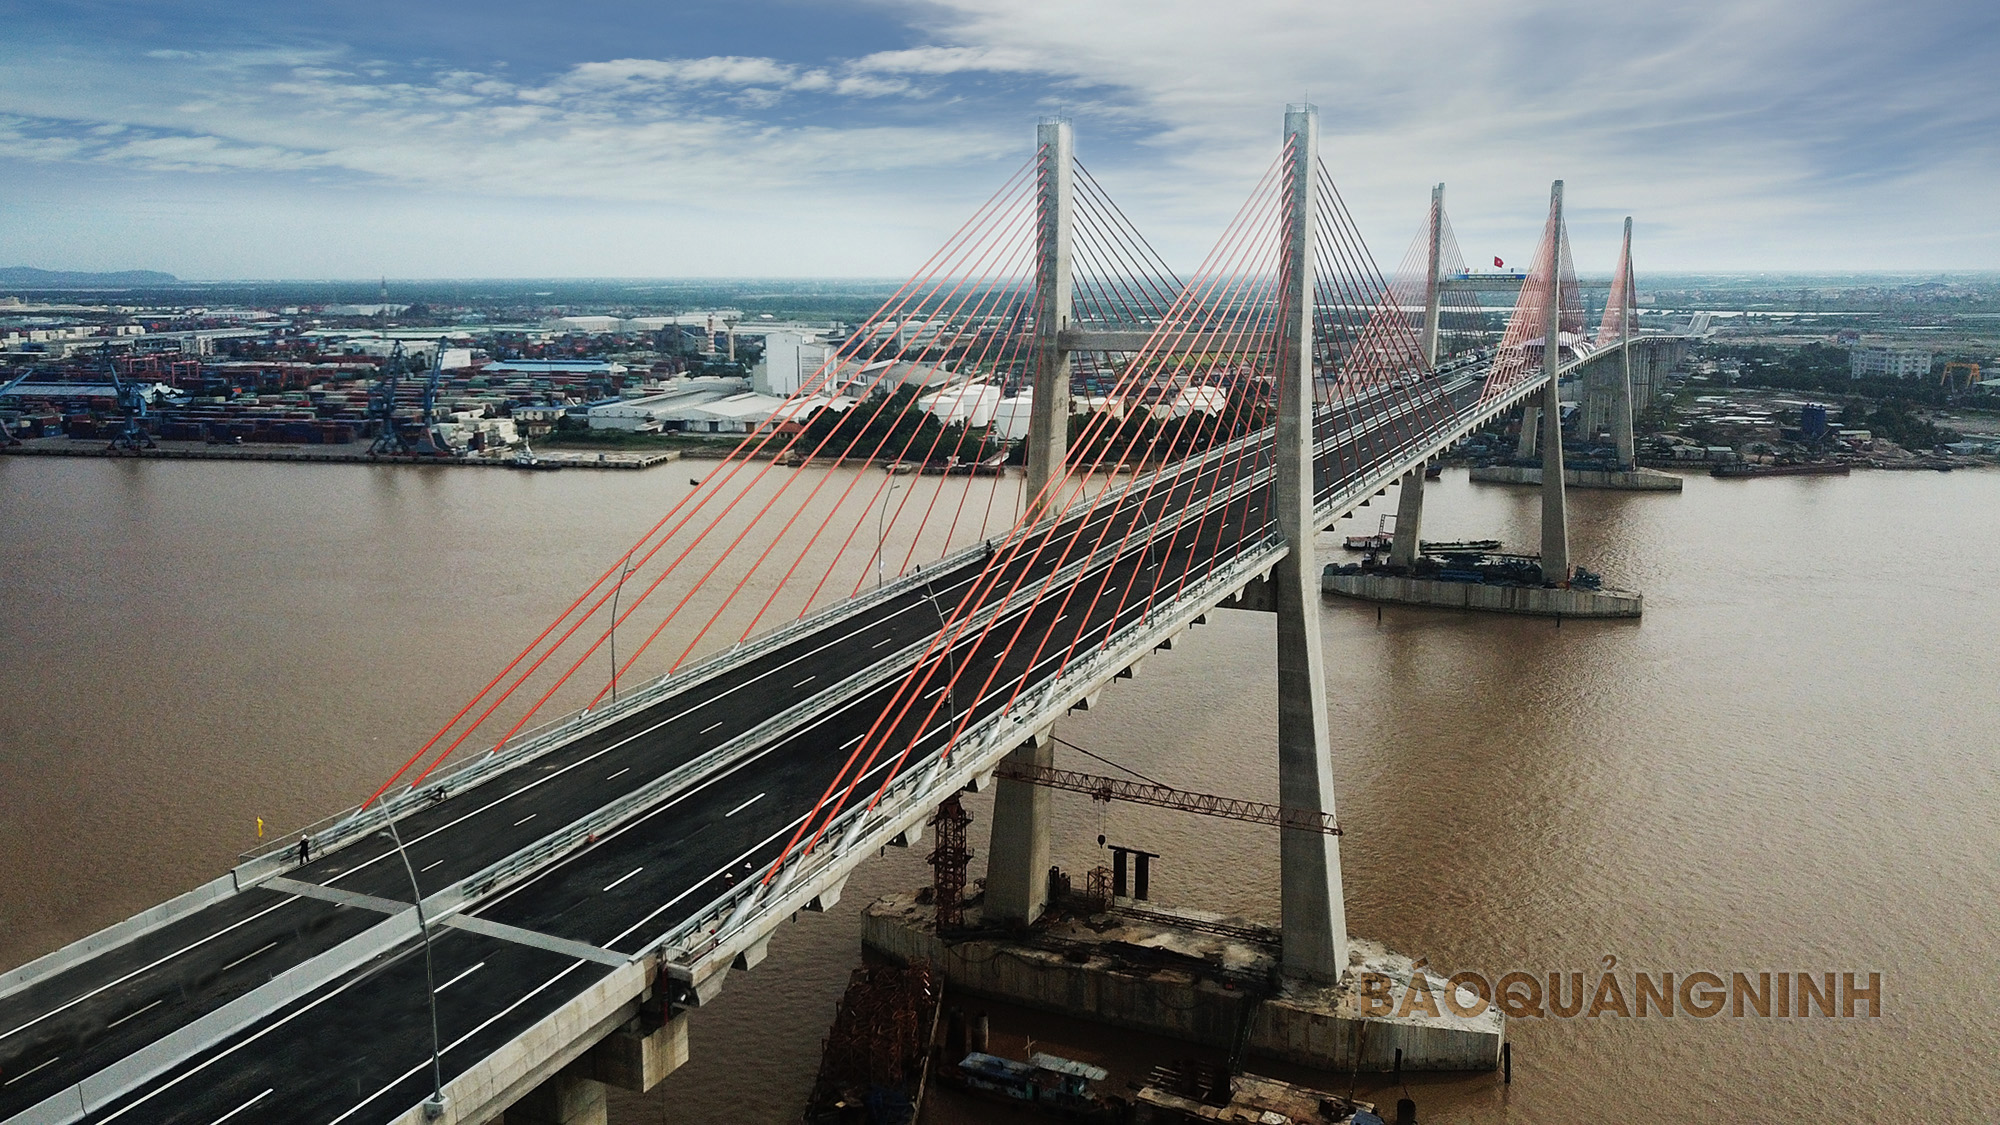 Cầu Bạch Đằng, cao tốc Hạ Long - Hải Phòng hoàn thành đưa vào sử dụng tháng 9/2018là bước đột phá quan trọng về hạ tầng giao thông kết nối vùng kinh tế trọng điểm phía Bắc